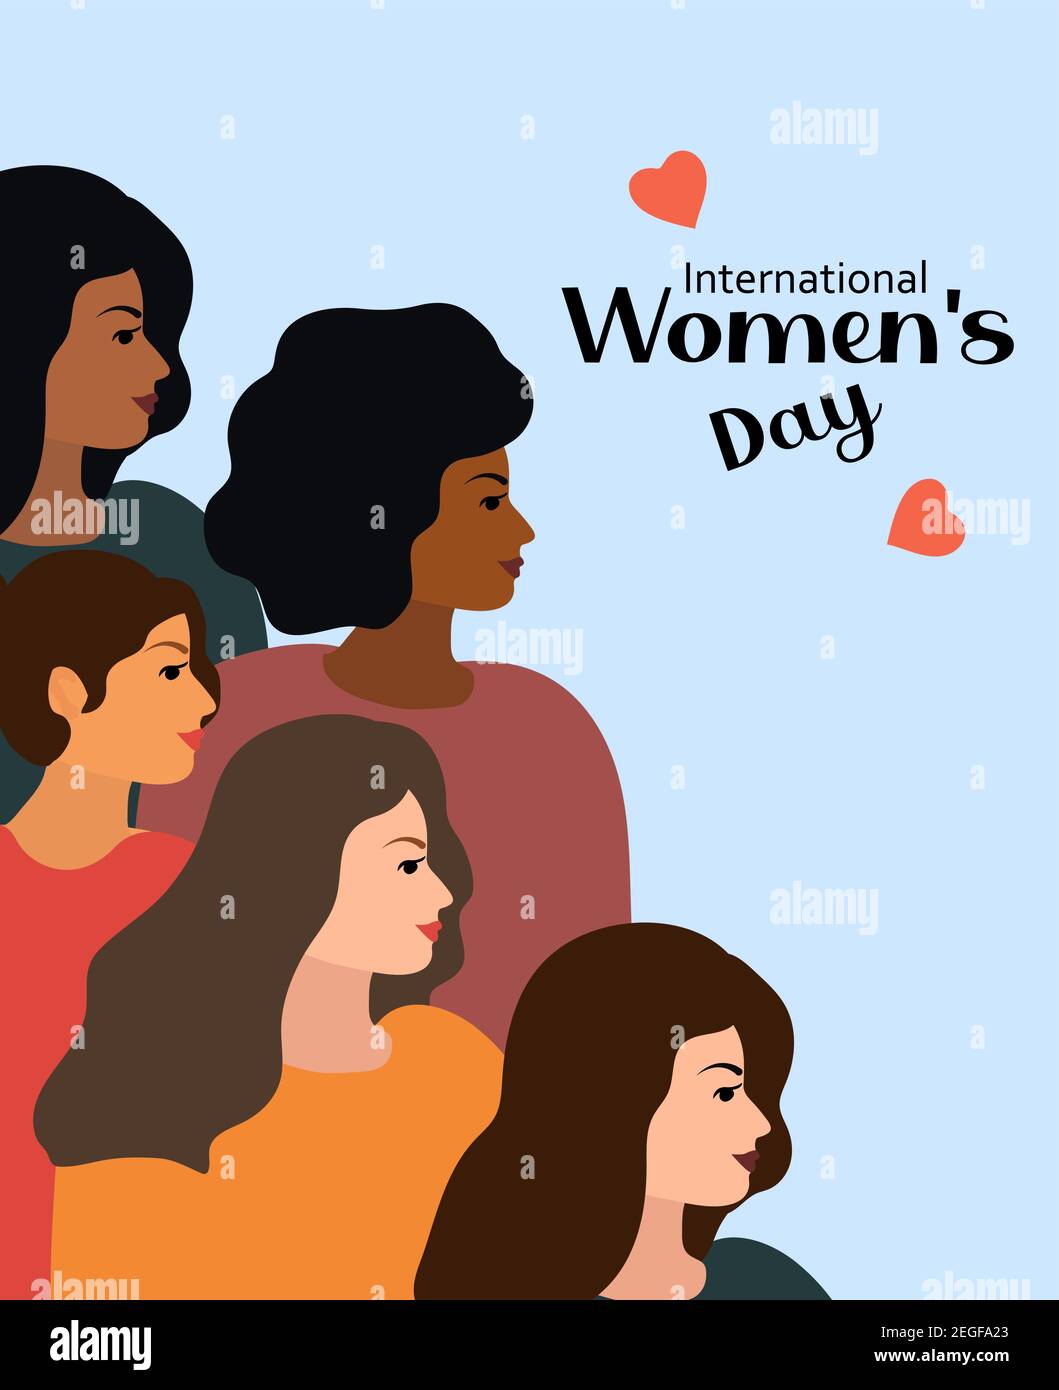 Internationaler Frauentag 8. März. Feminismus weibliche Solidarität Grußkarte. Kampf für Freiheit, Unabhängigkeit, Gleichheit. Vektorgrafik Stock Vektor